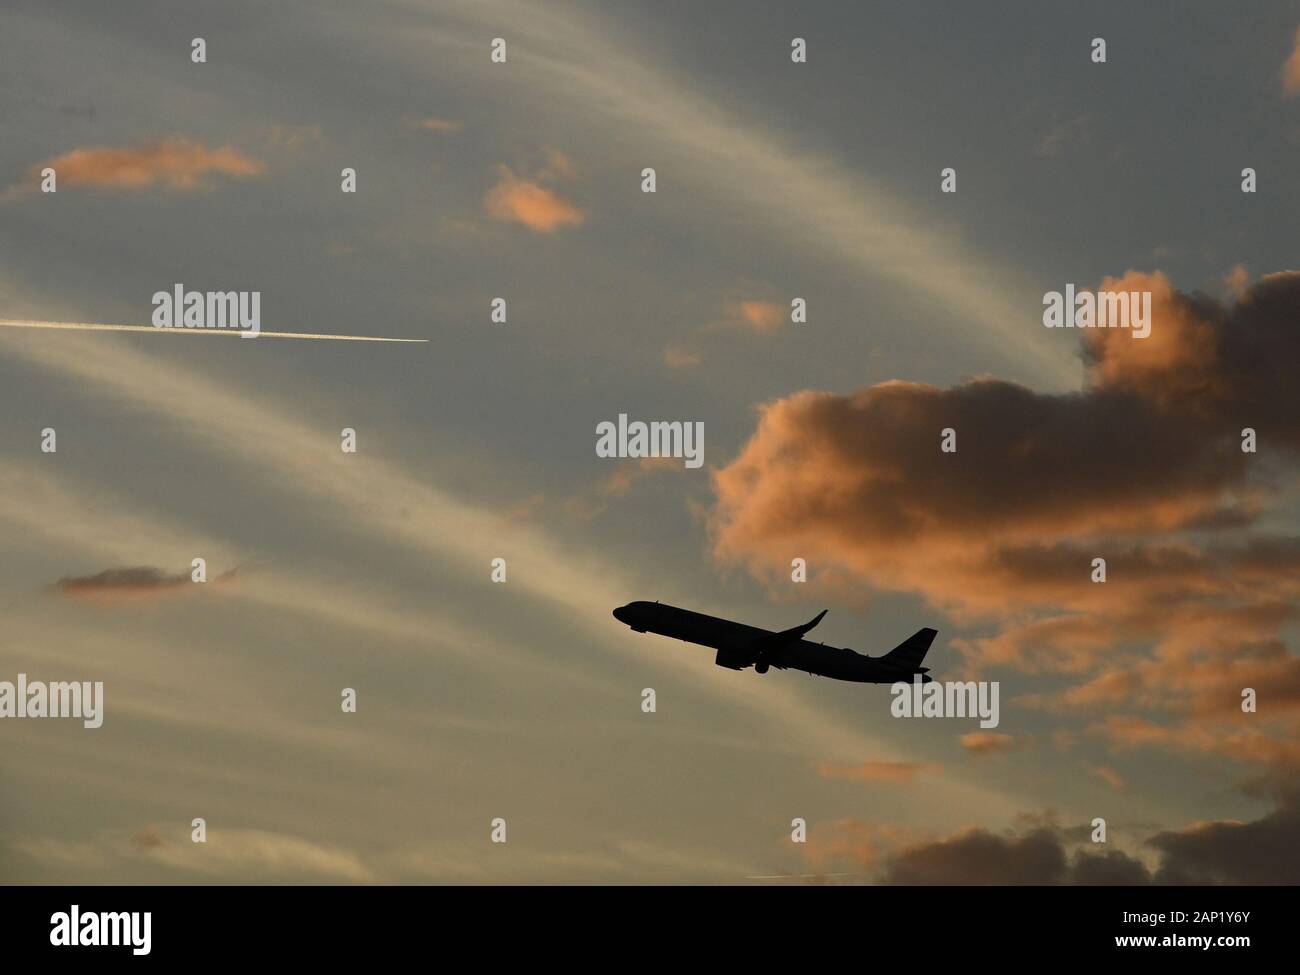 Un avion commercial part à l'aéroport international d'Orlando au coucher du soleil alors que le contrail d'un autre avion est en arrière-plan. Banque D'Images